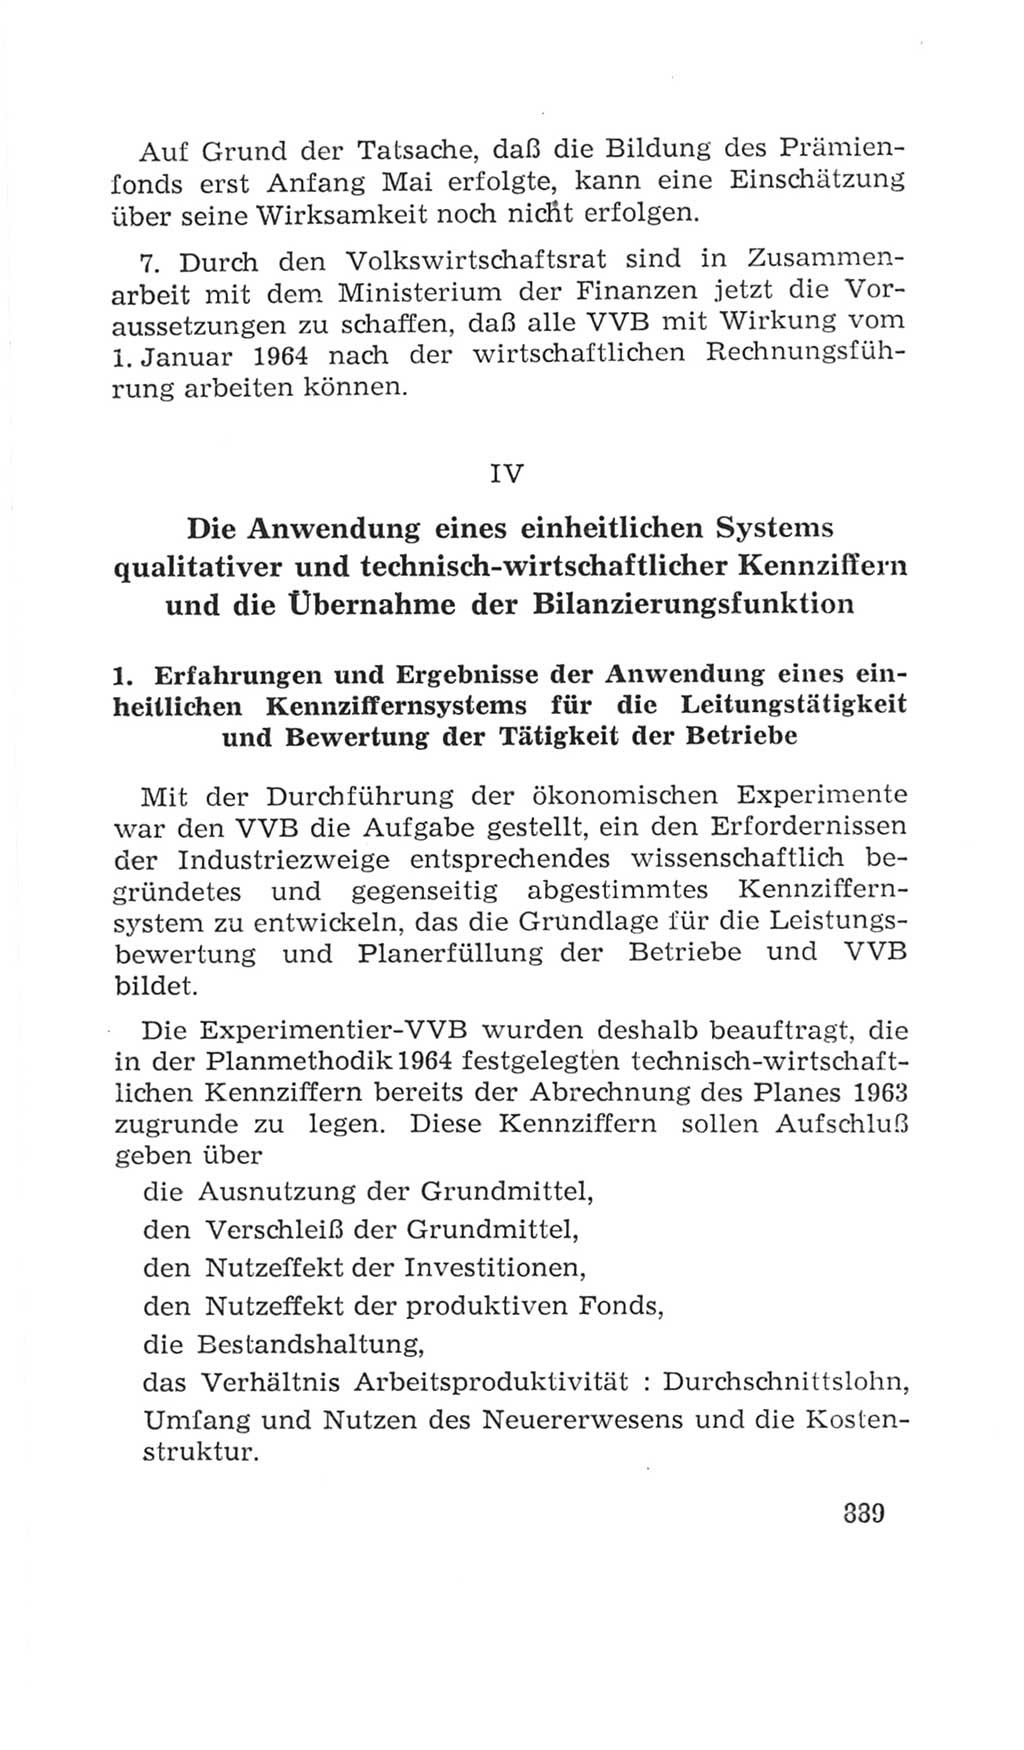 Volkskammer (VK) der Deutschen Demokratischen Republik (DDR), 4. Wahlperiode 1963-1967, Seite 889 (VK. DDR 4. WP. 1963-1967, S. 889)